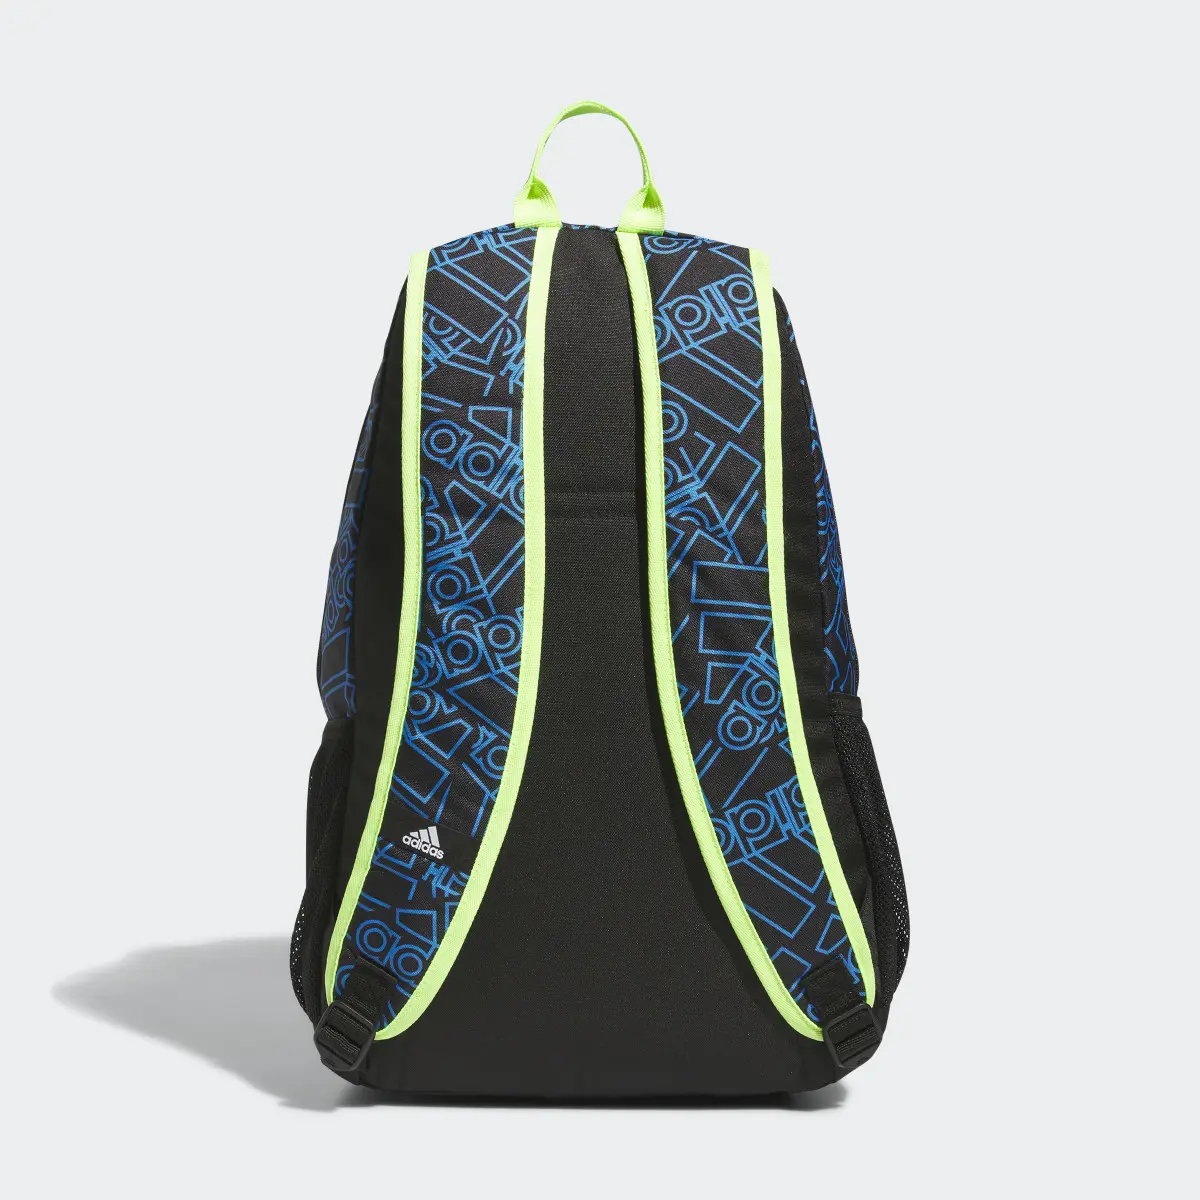 Adidas Foundation 6 Backpack. 3